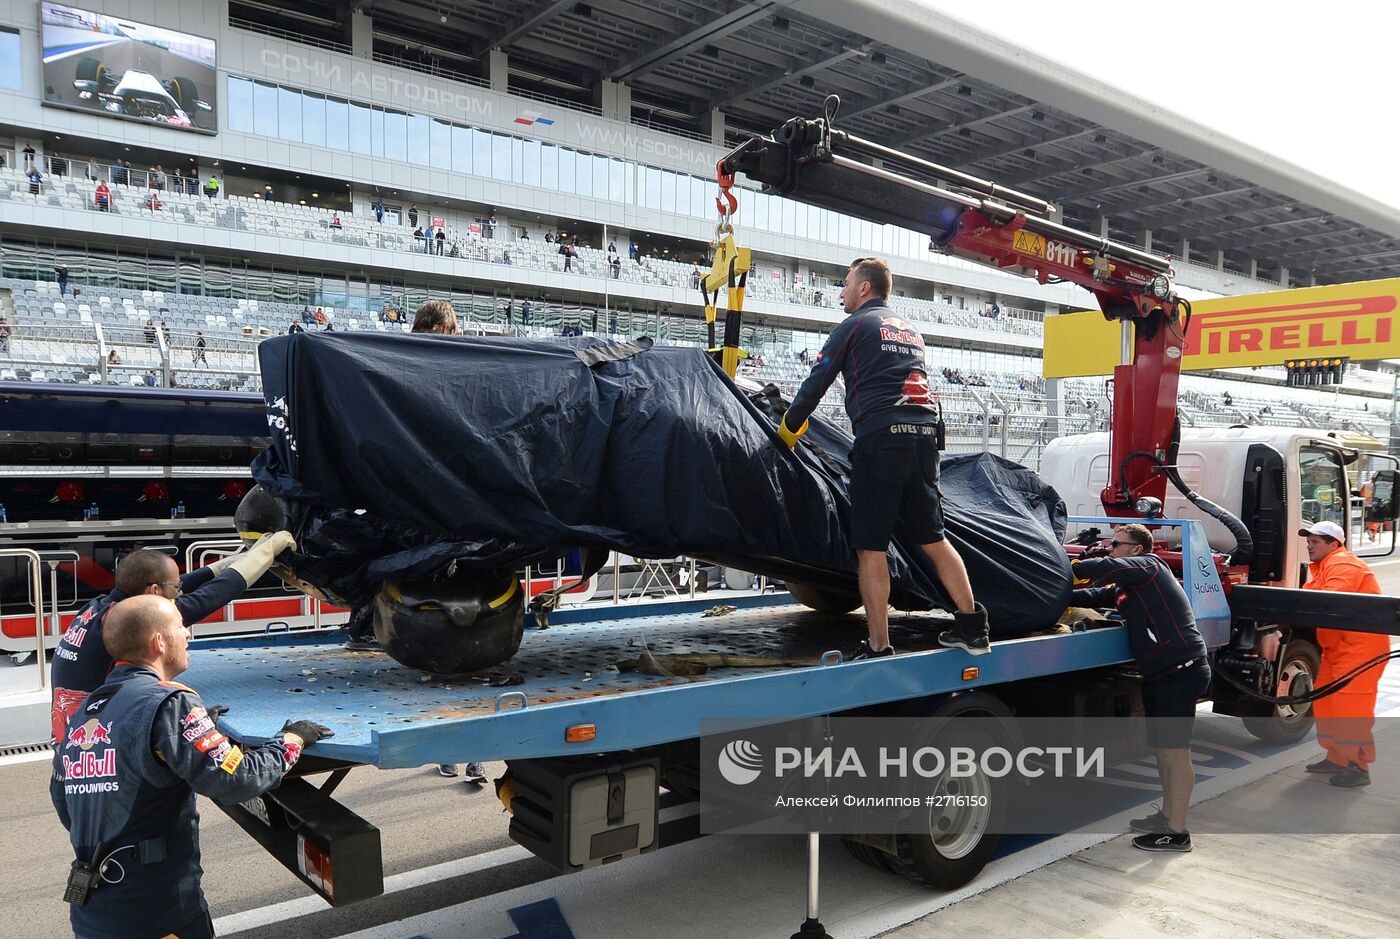 Третья сессия свободных заездов на этапе Формулы-1 в Сочи прервана из-за аварии